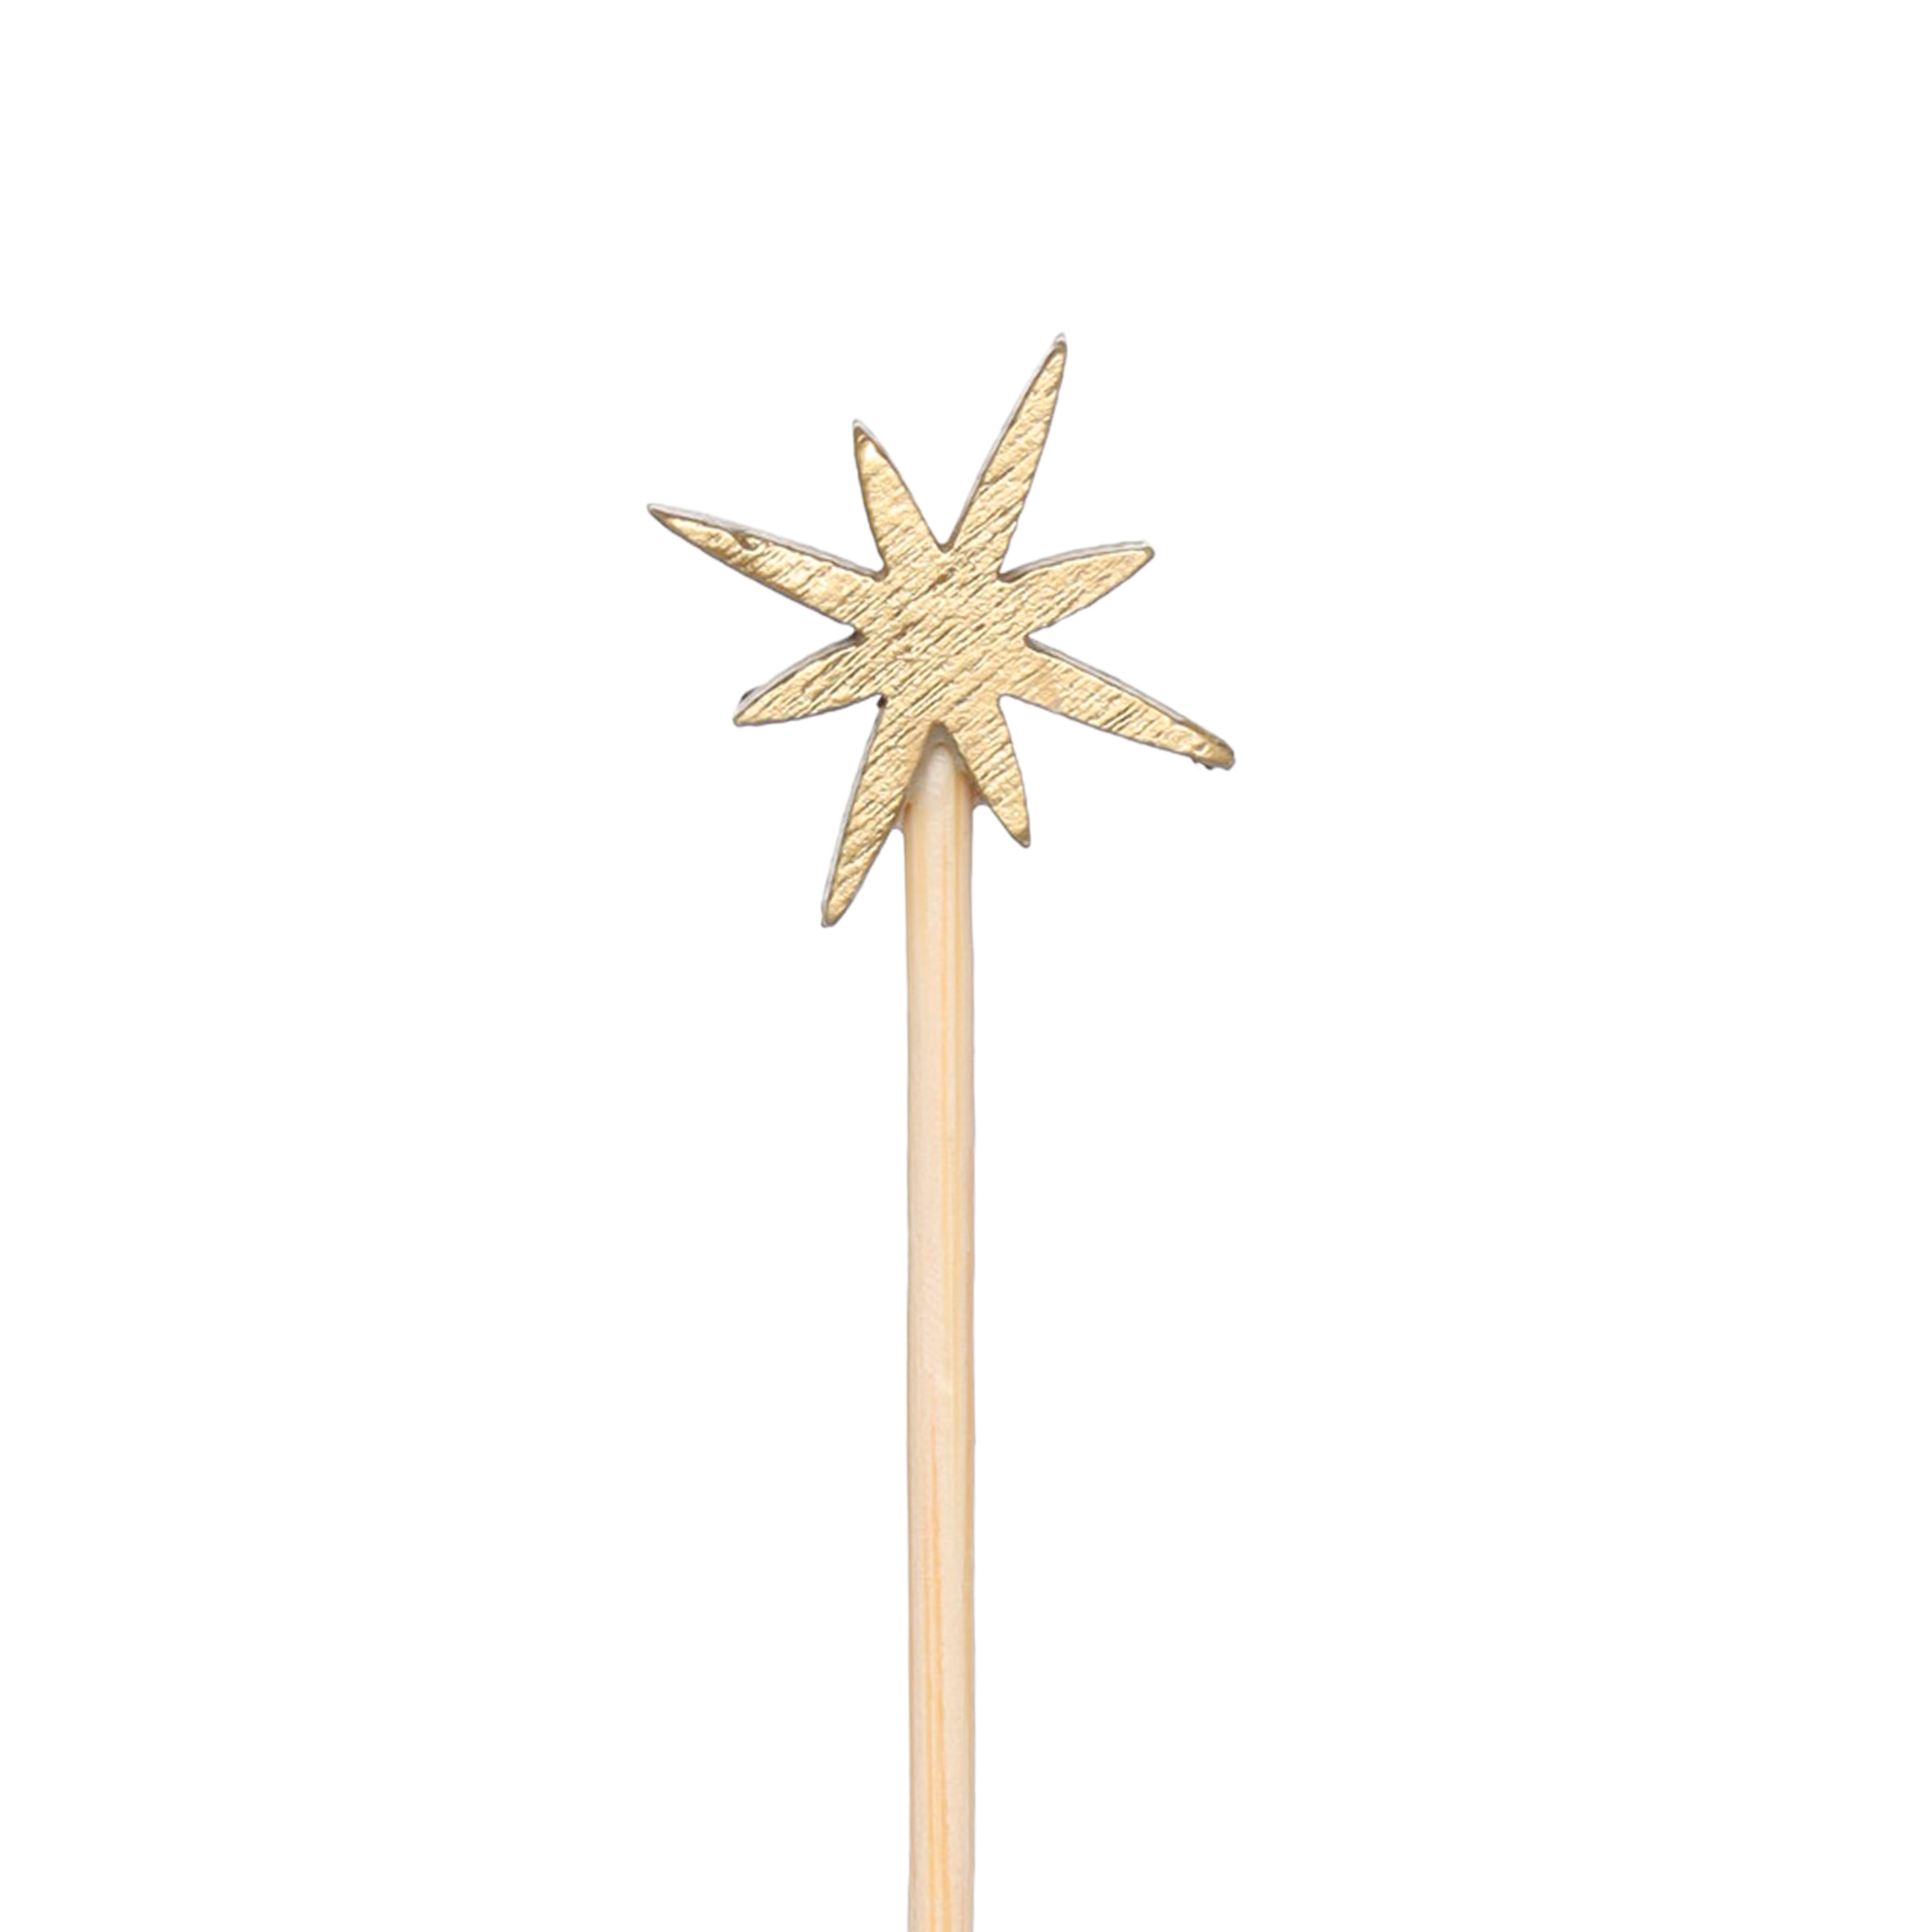 Шпажка для канапе, 9 см, 20 шт, бамбук, золотистая, Звезда, Elegant details изображение № 2